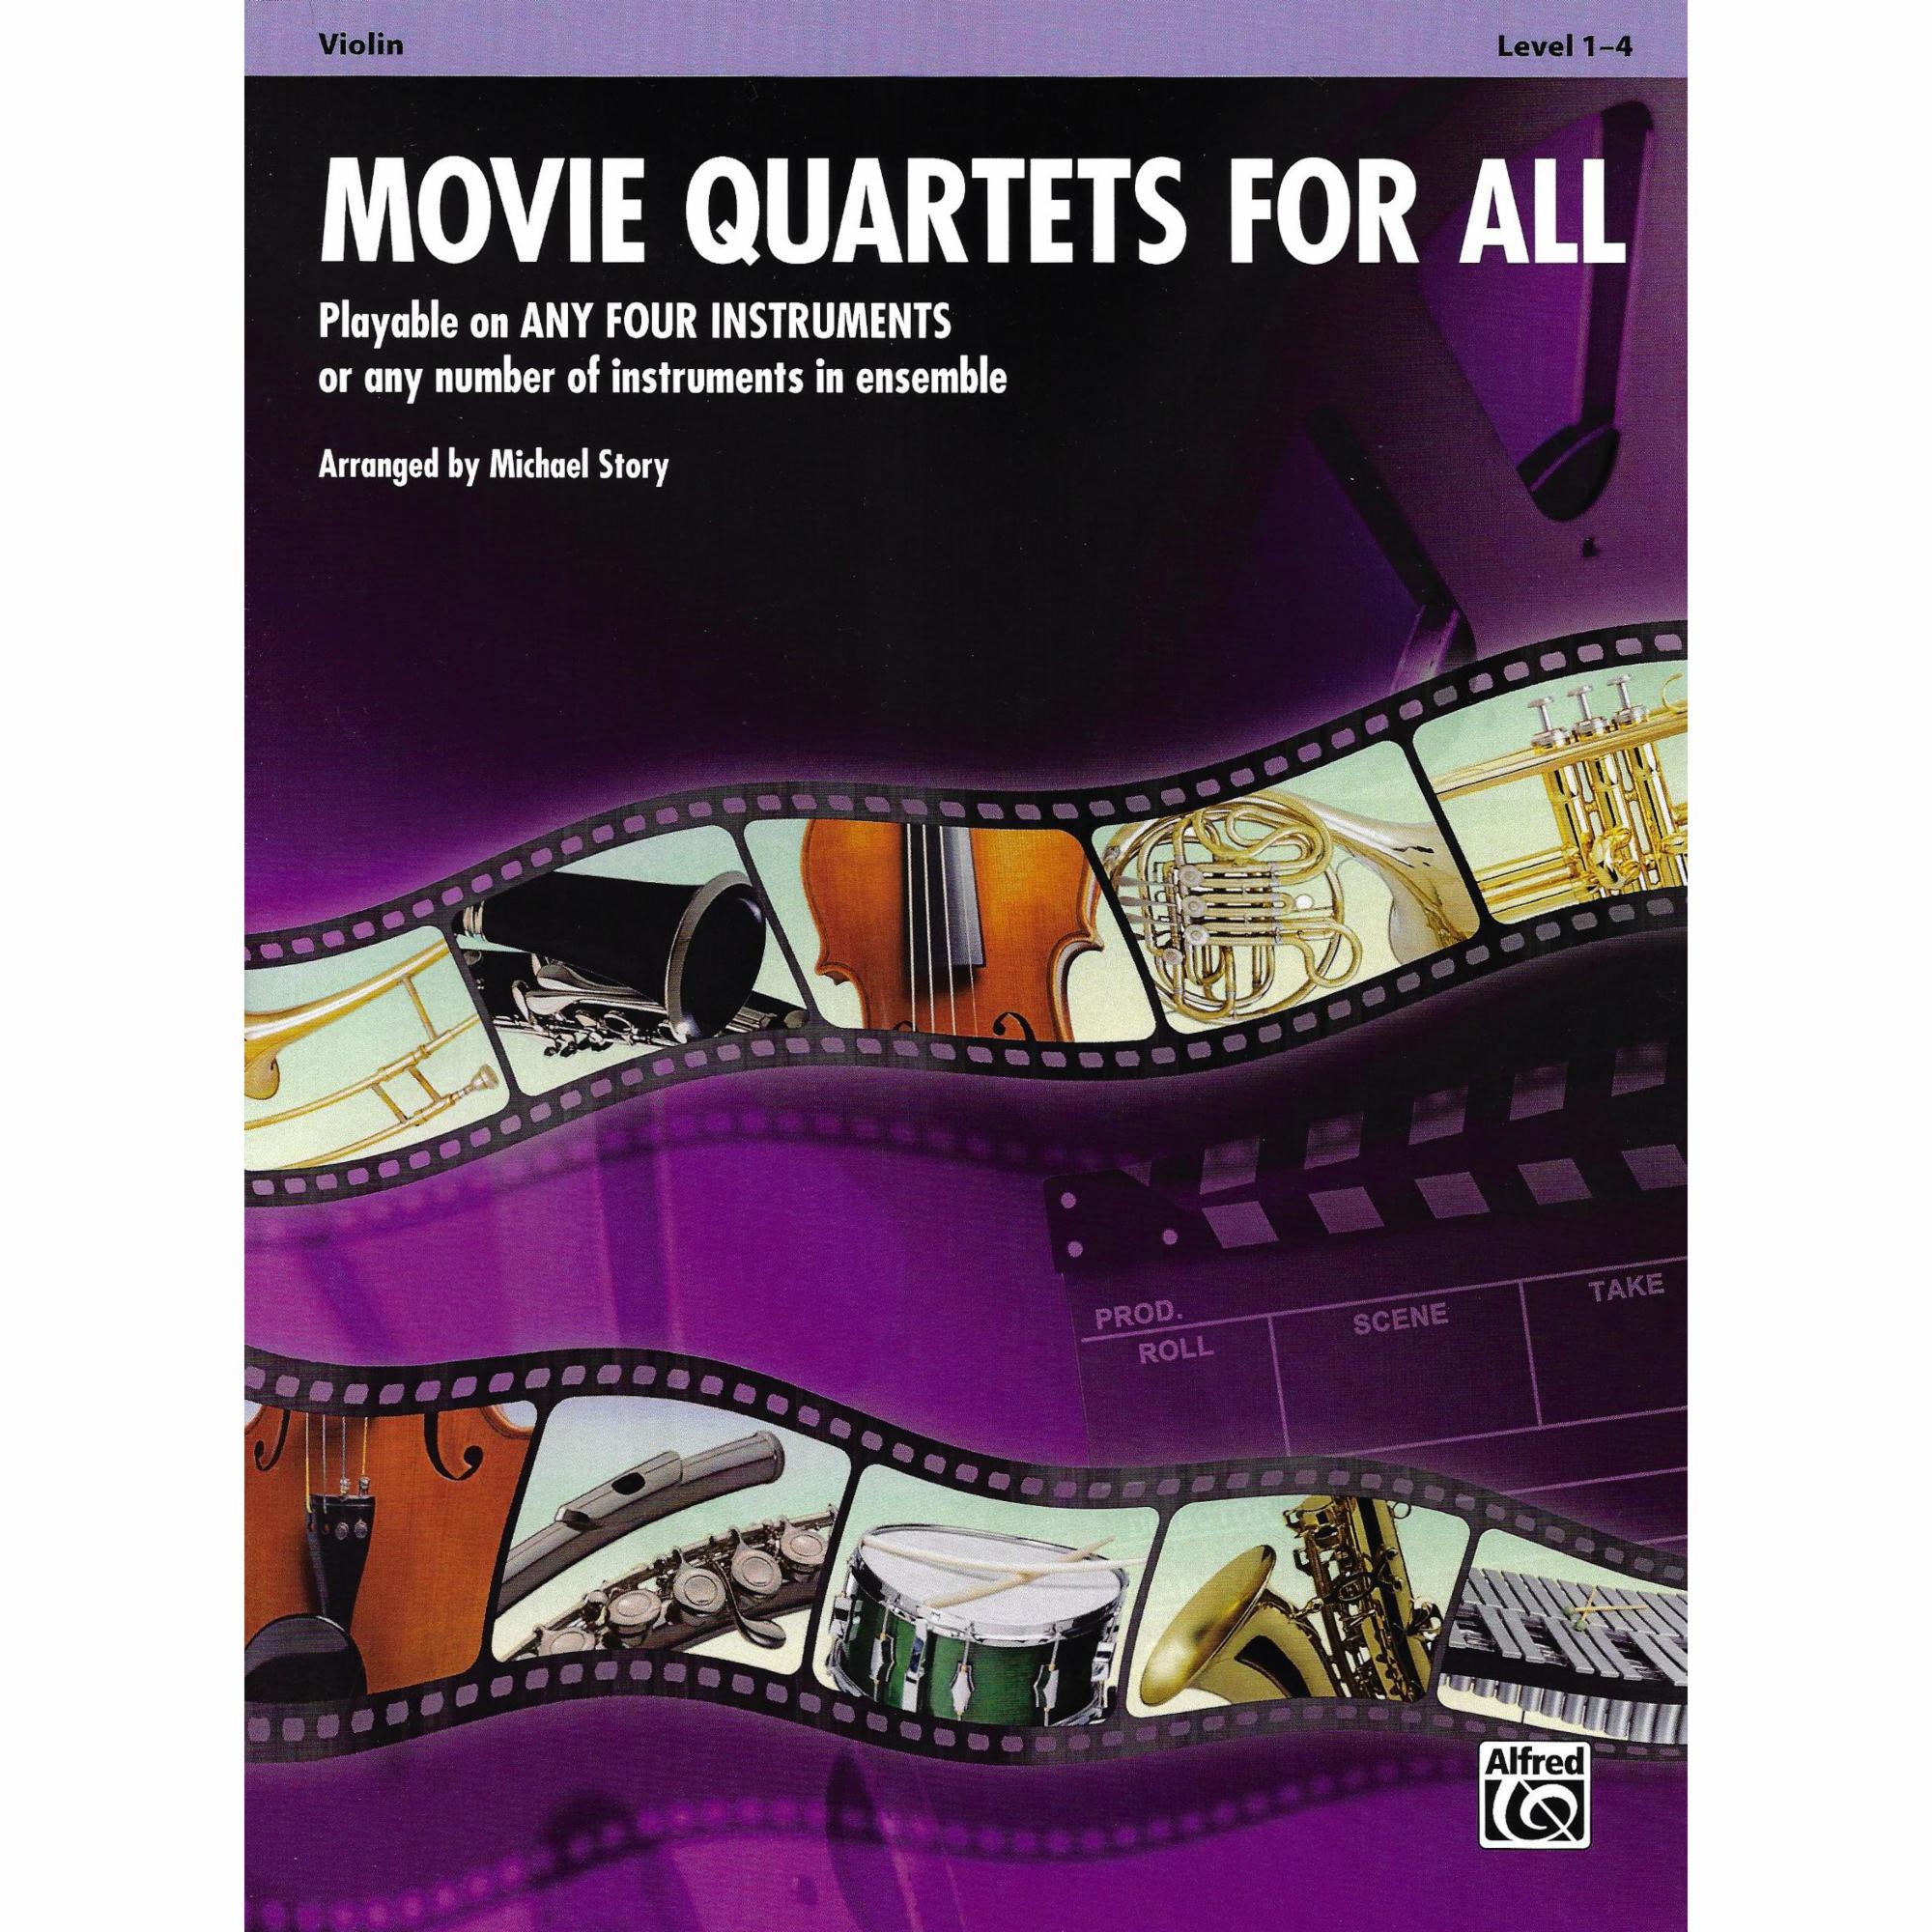 Movie Quartets for All